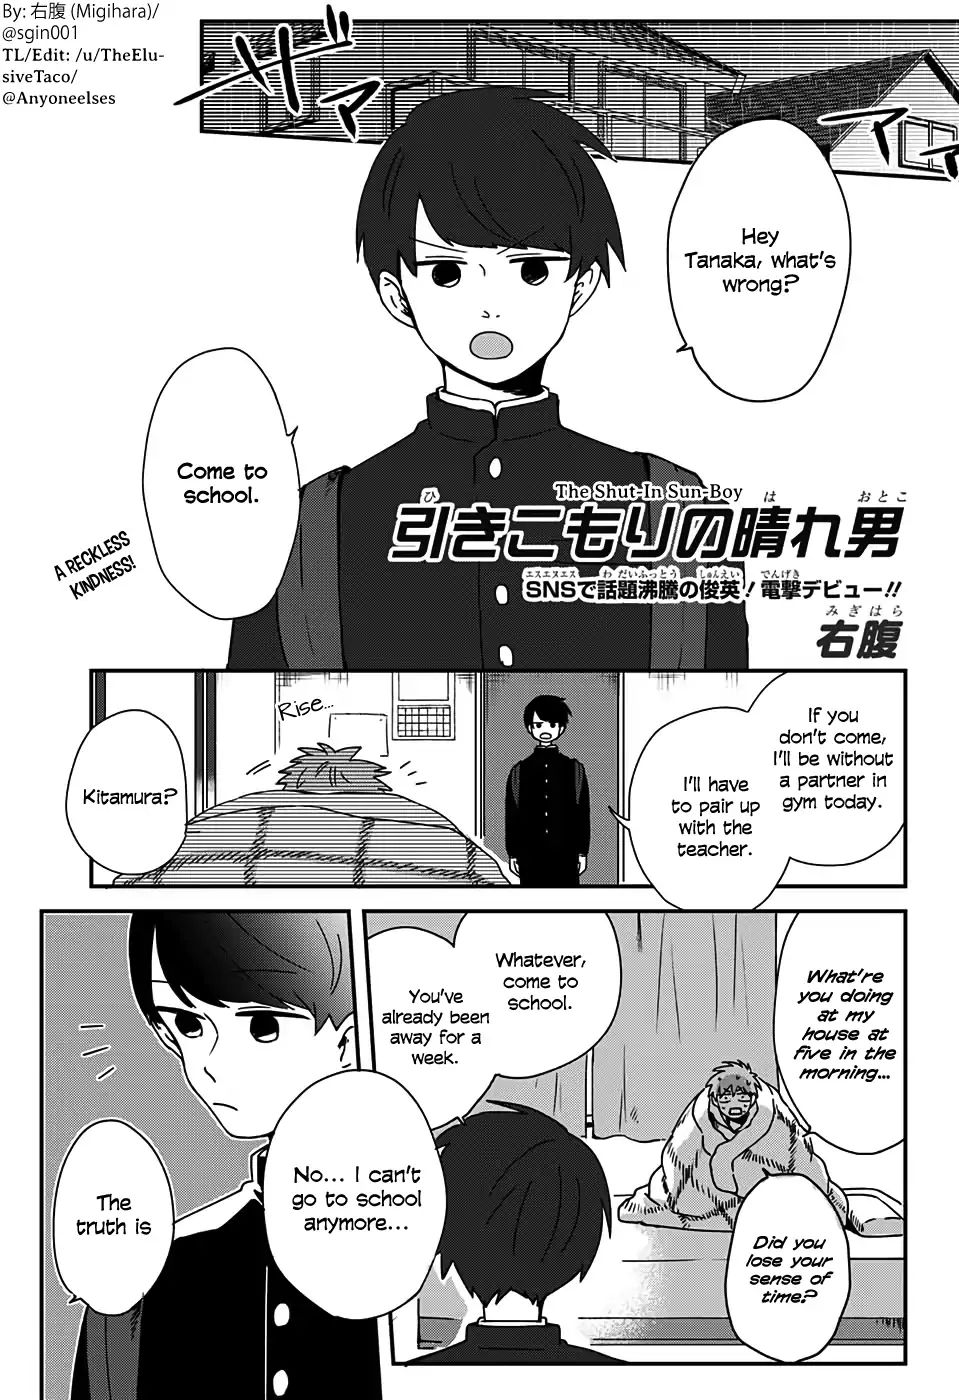 Migihara's Short Manga - chapter 6 - #1